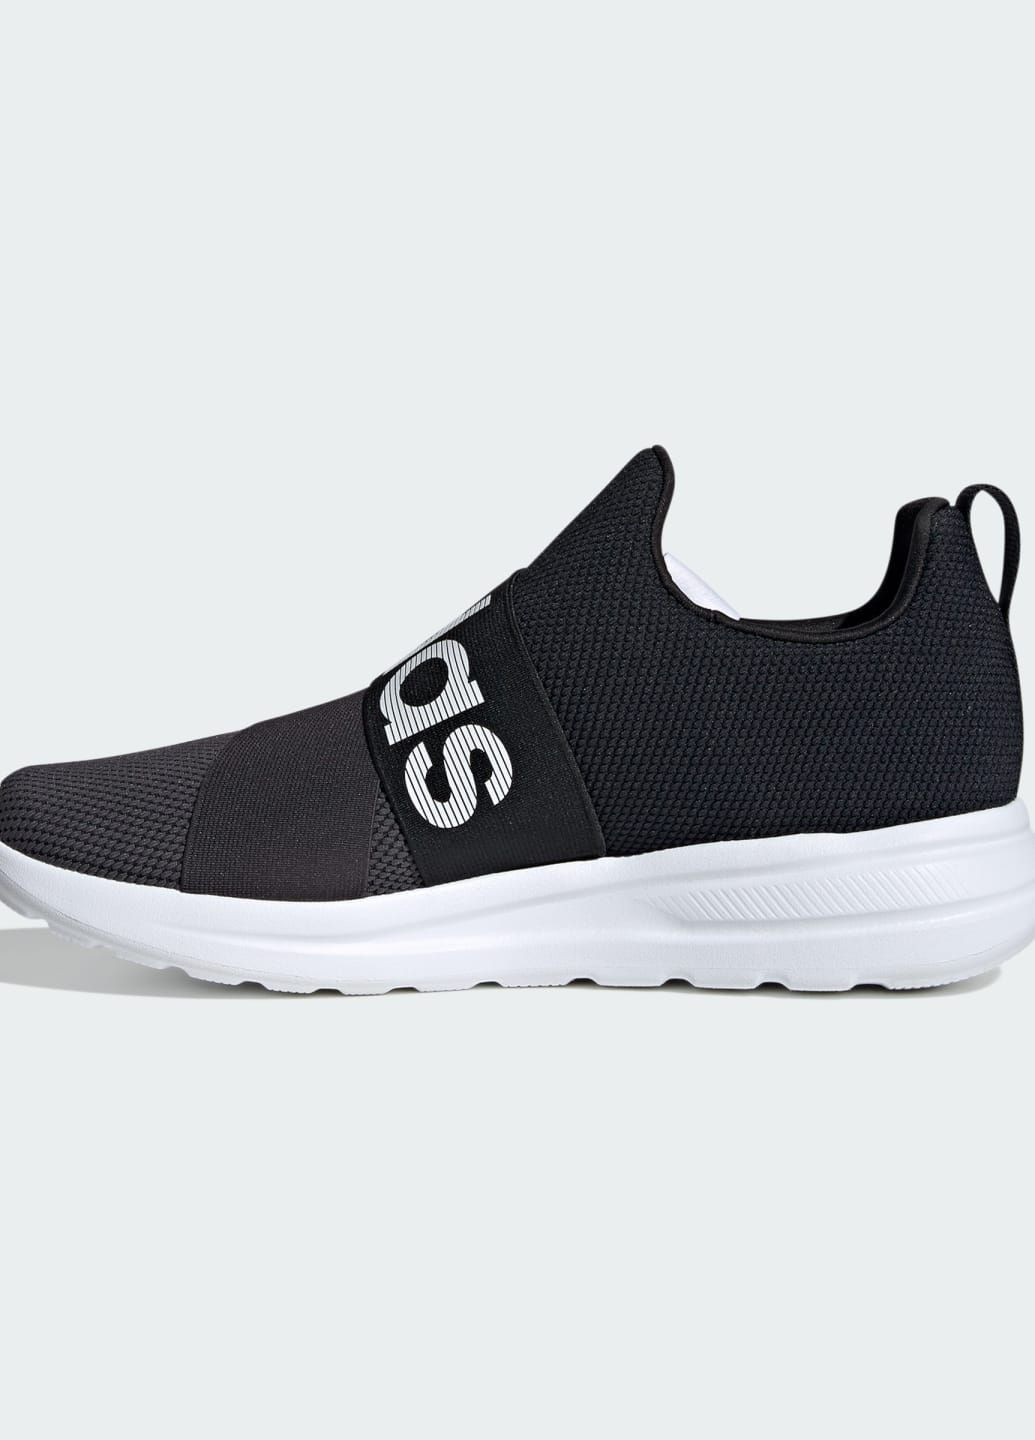 Черные всесезонные кроссовки lite racer adapt 6.0 adidas